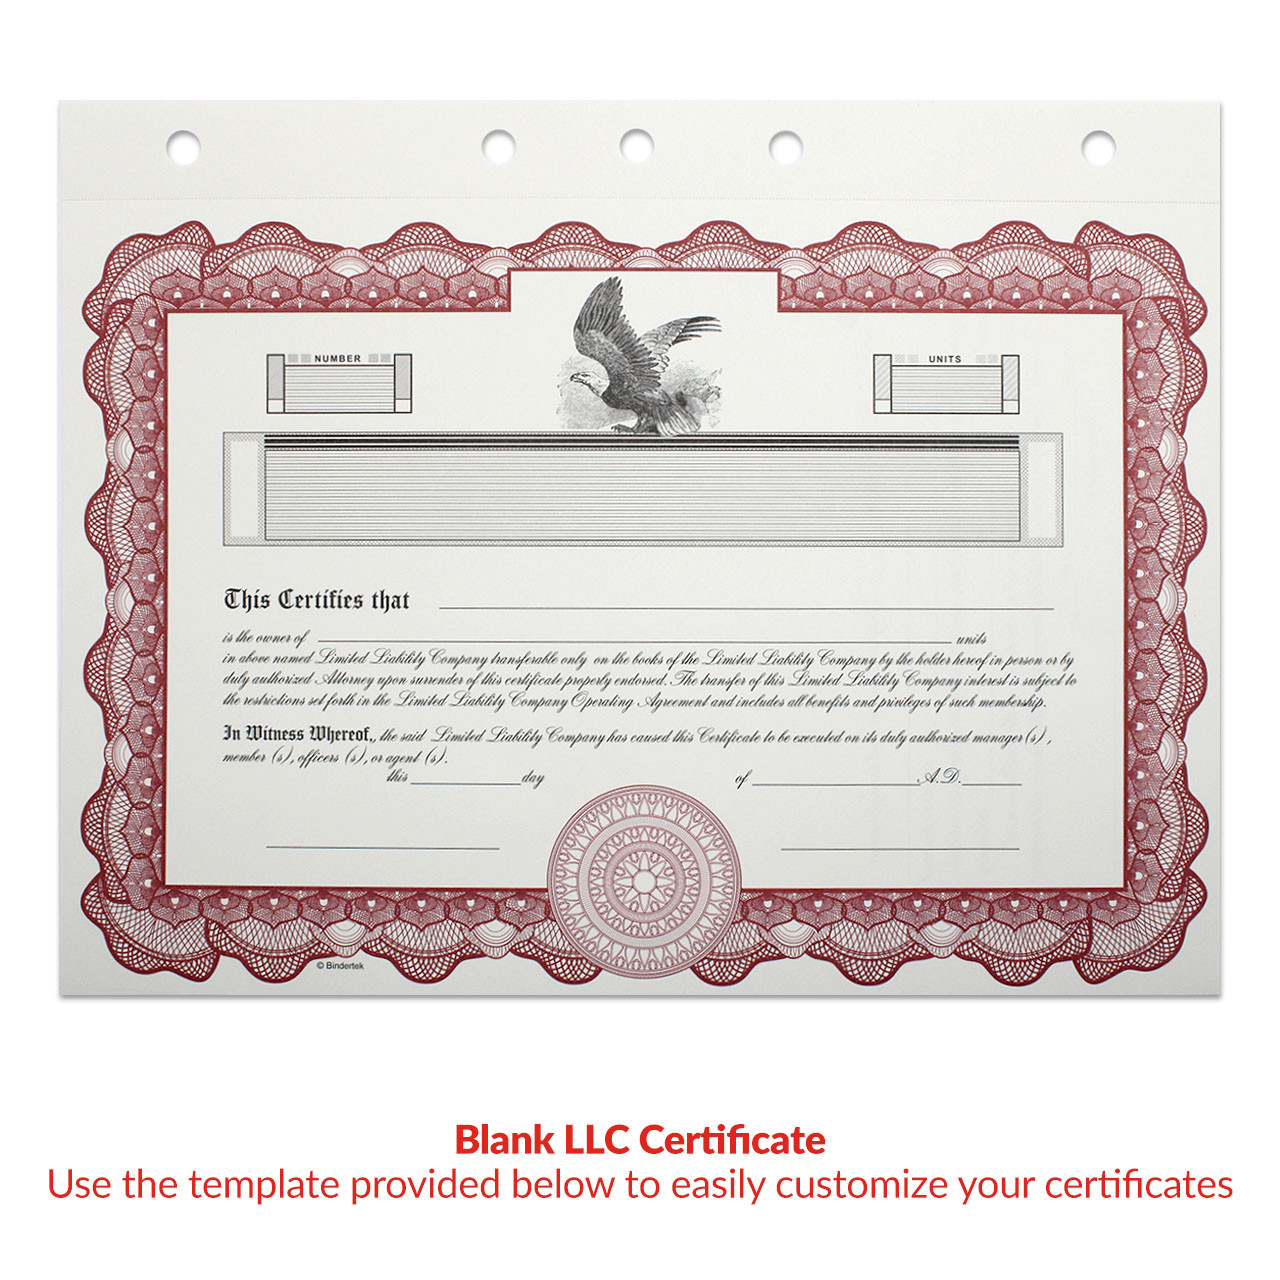 Customizable LLC Certificates - Bindertek